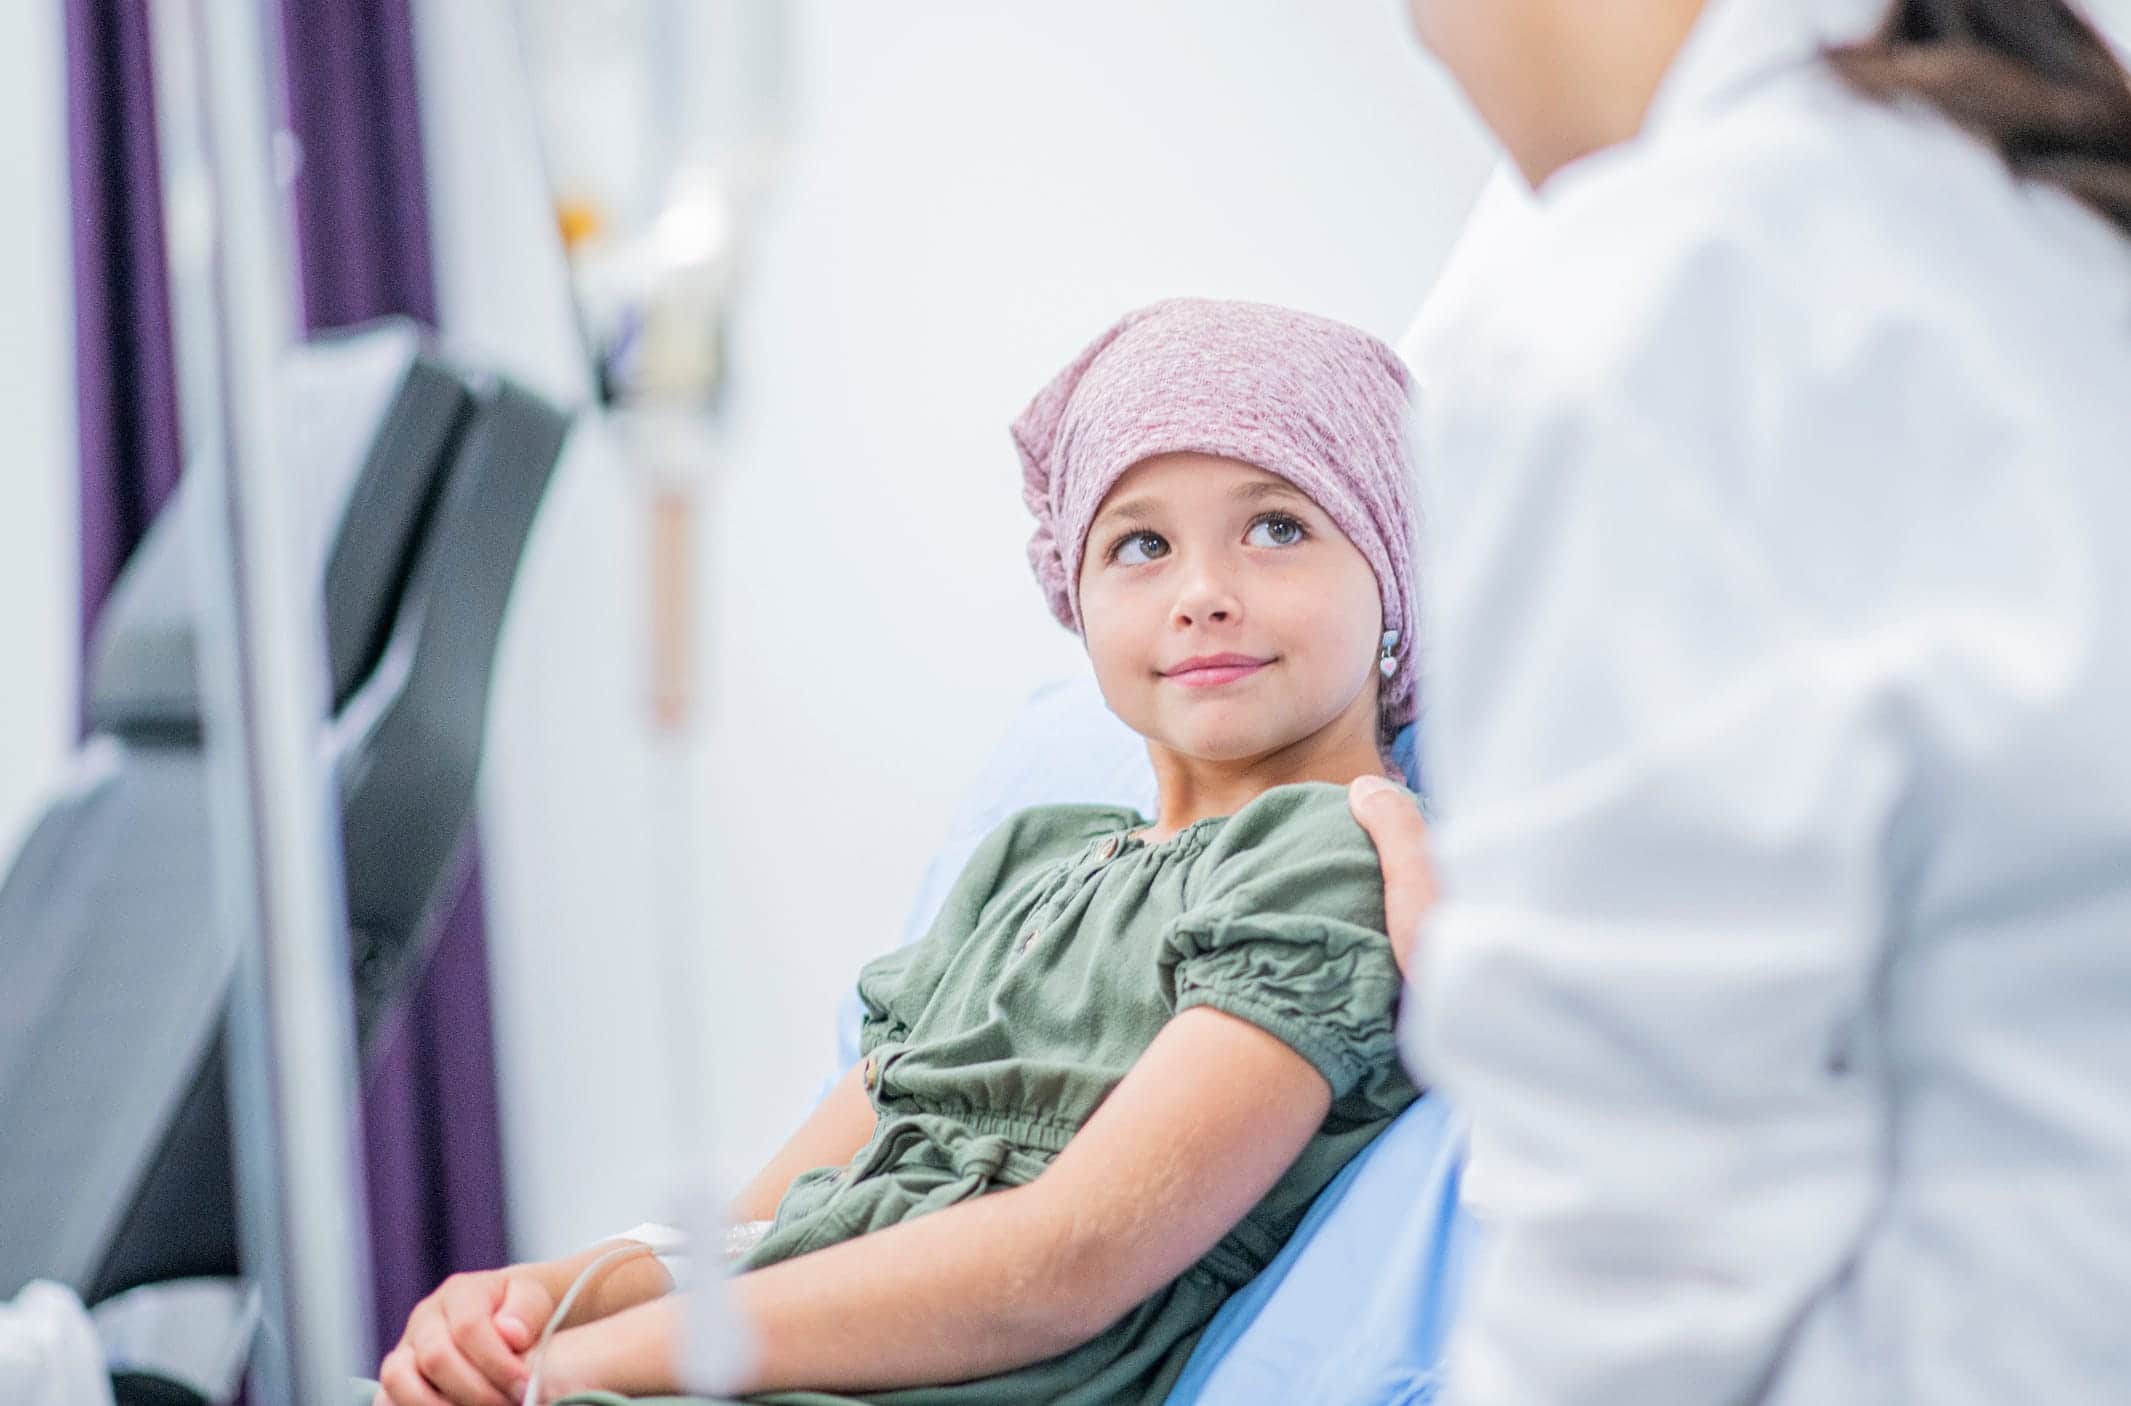 علاج جديد لمرض السرطان يمكن أن يقضي على الأورام لدى المرضى الميؤوس من شفائهم watanserb.com